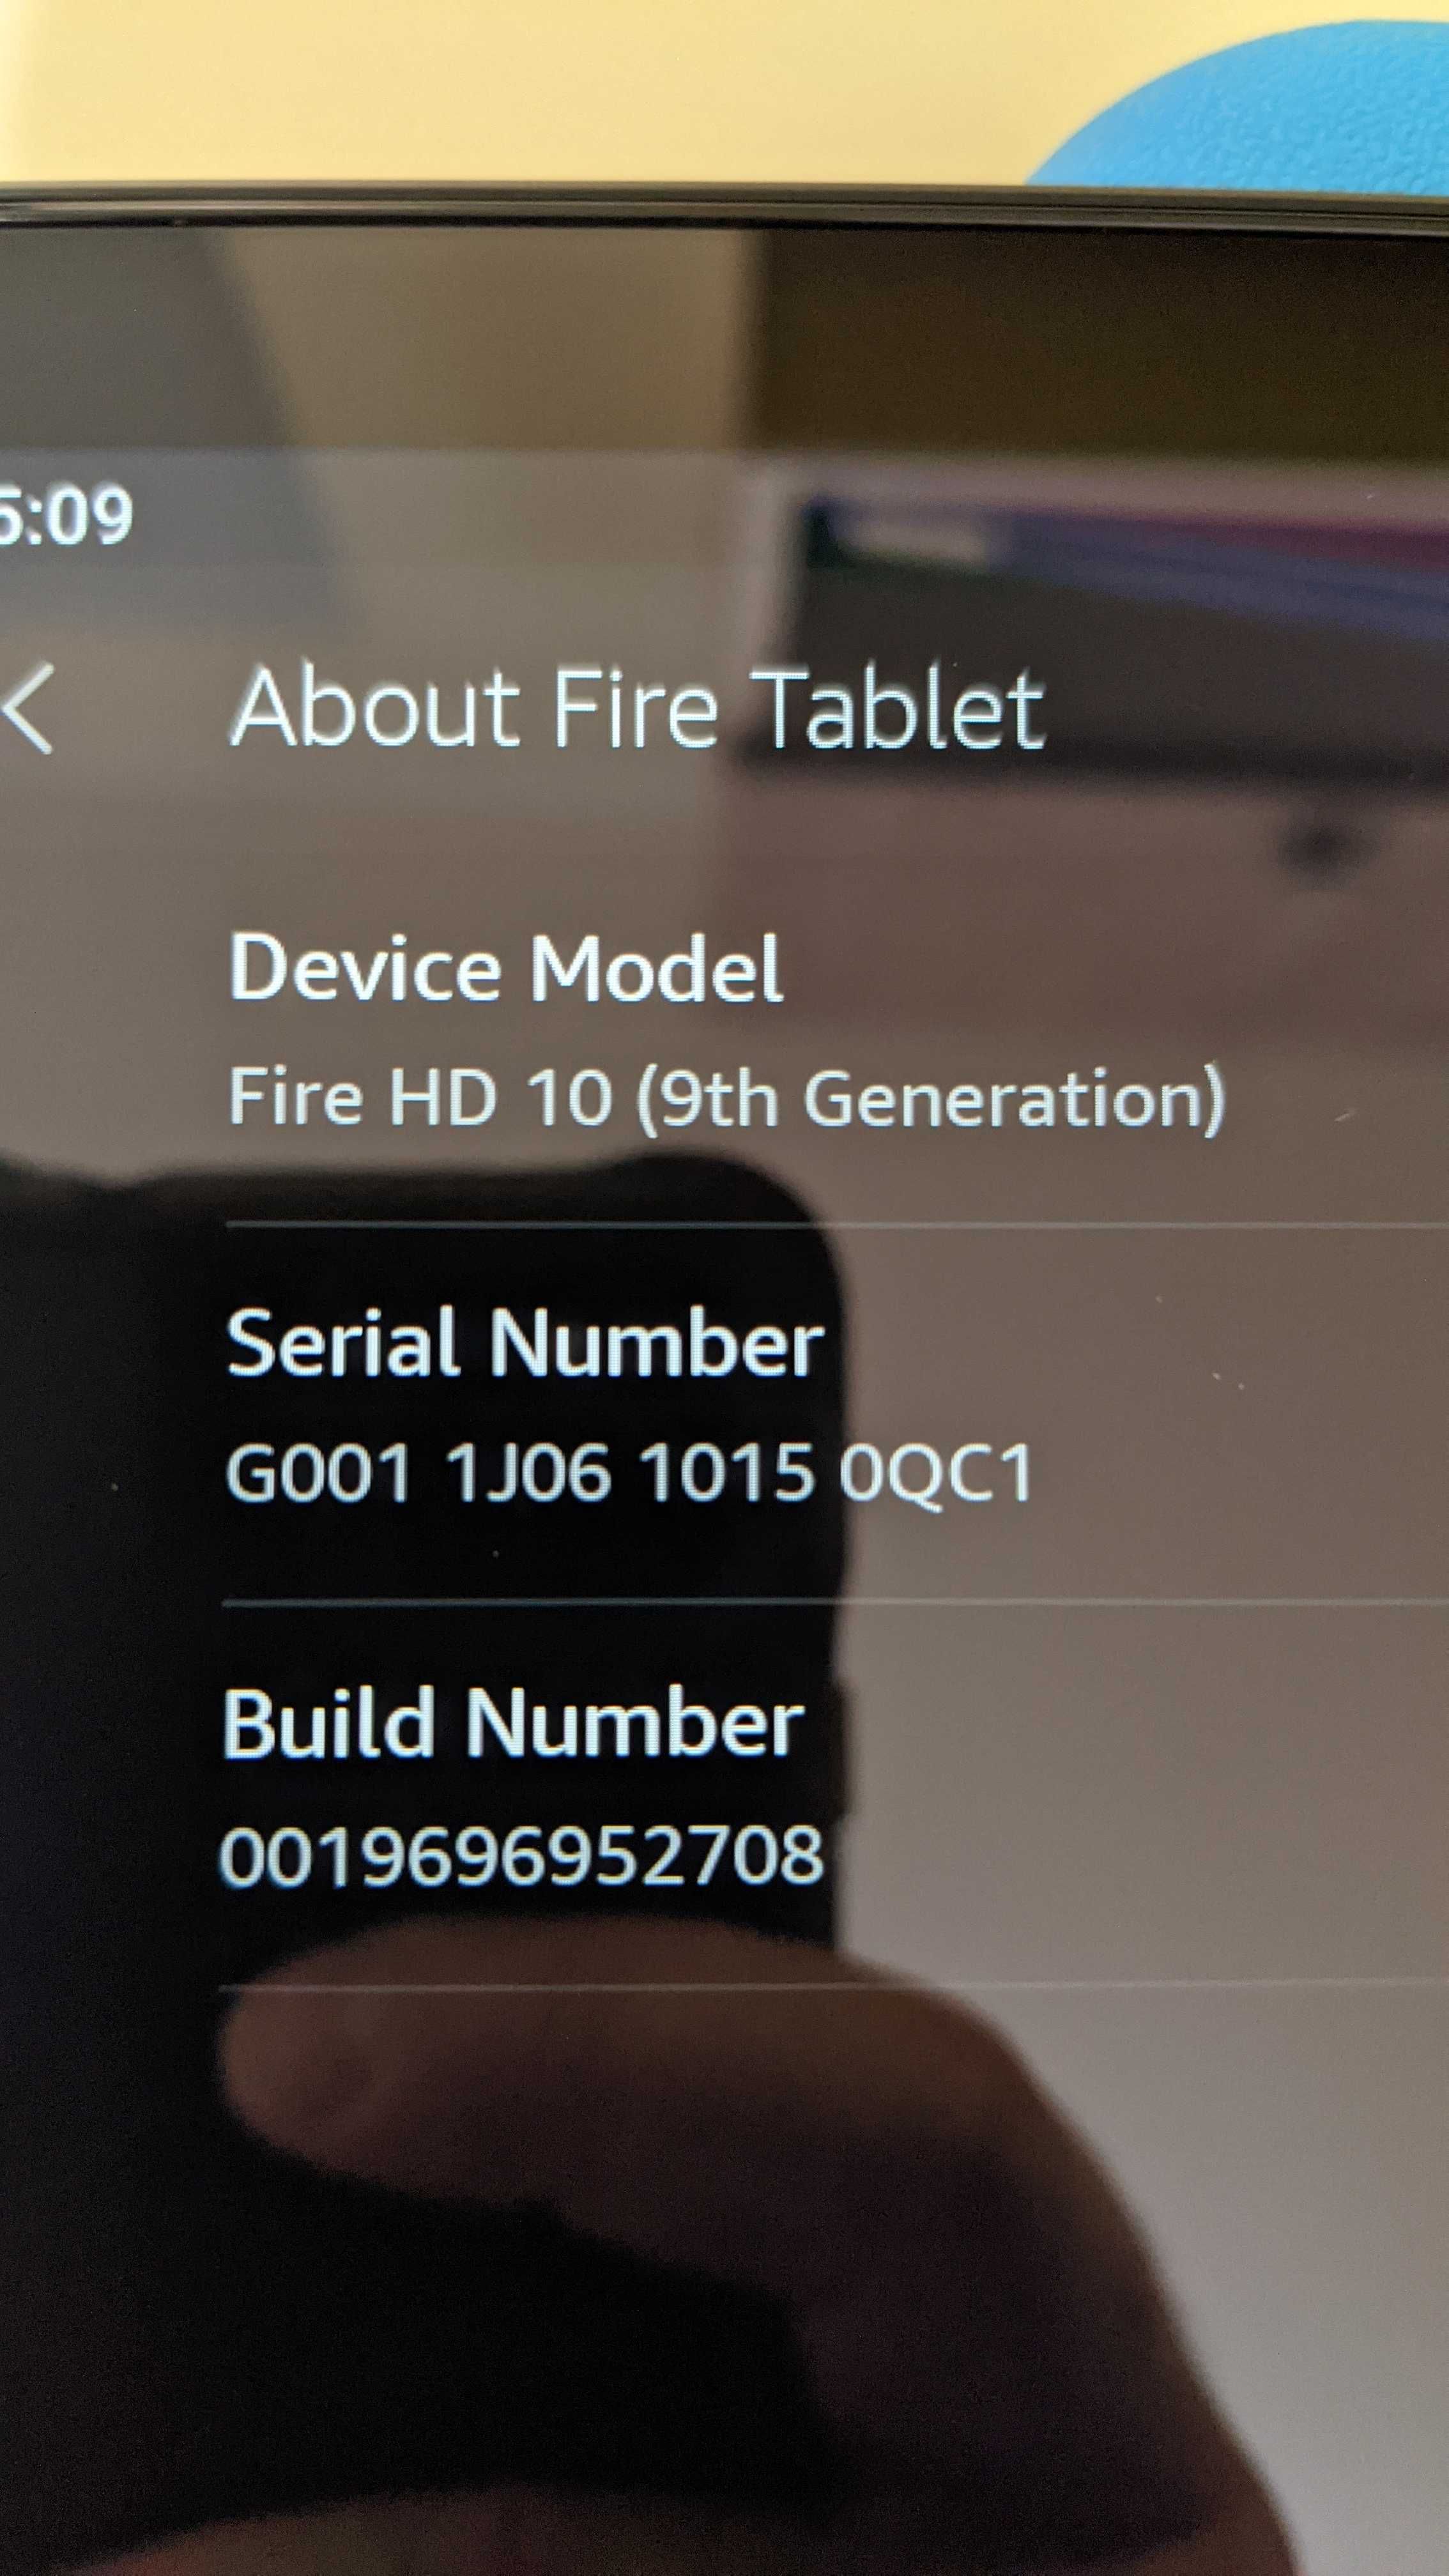 Fire HD 10 Kids Edition Tablet (gen 9)